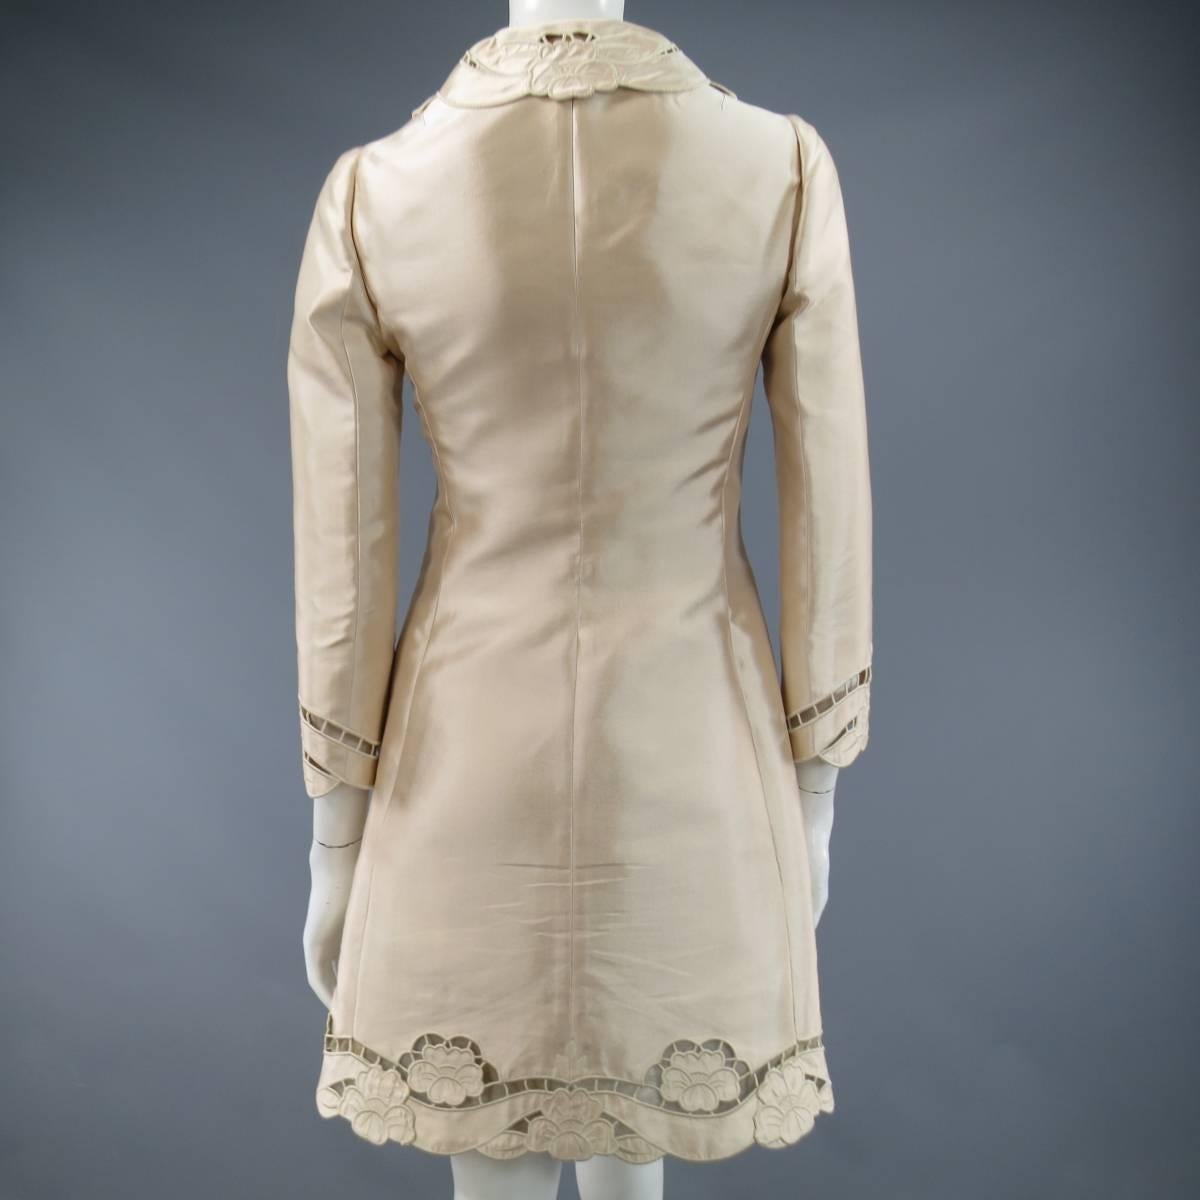 DOLCE & GABBANA Coat Dress - Size 6 Blush Silk Satin Floral Lace 1